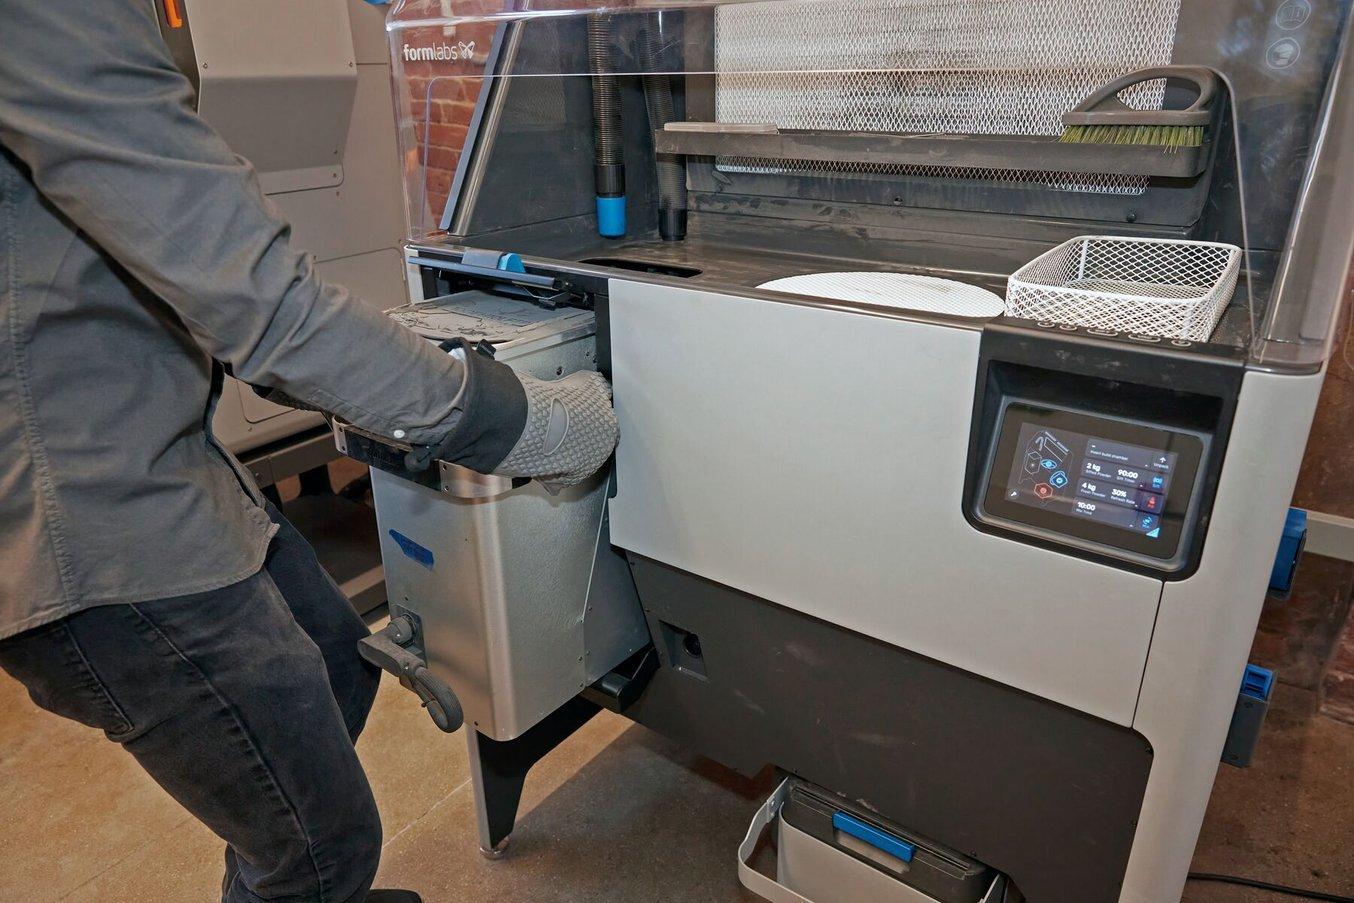 La Fuse Sift completa il workflow di stampa SLS effettuato con la Fuse 1 e offre un sistema sicuro ed efficiente per estrarre le parti stampate e riciclare la polvere.